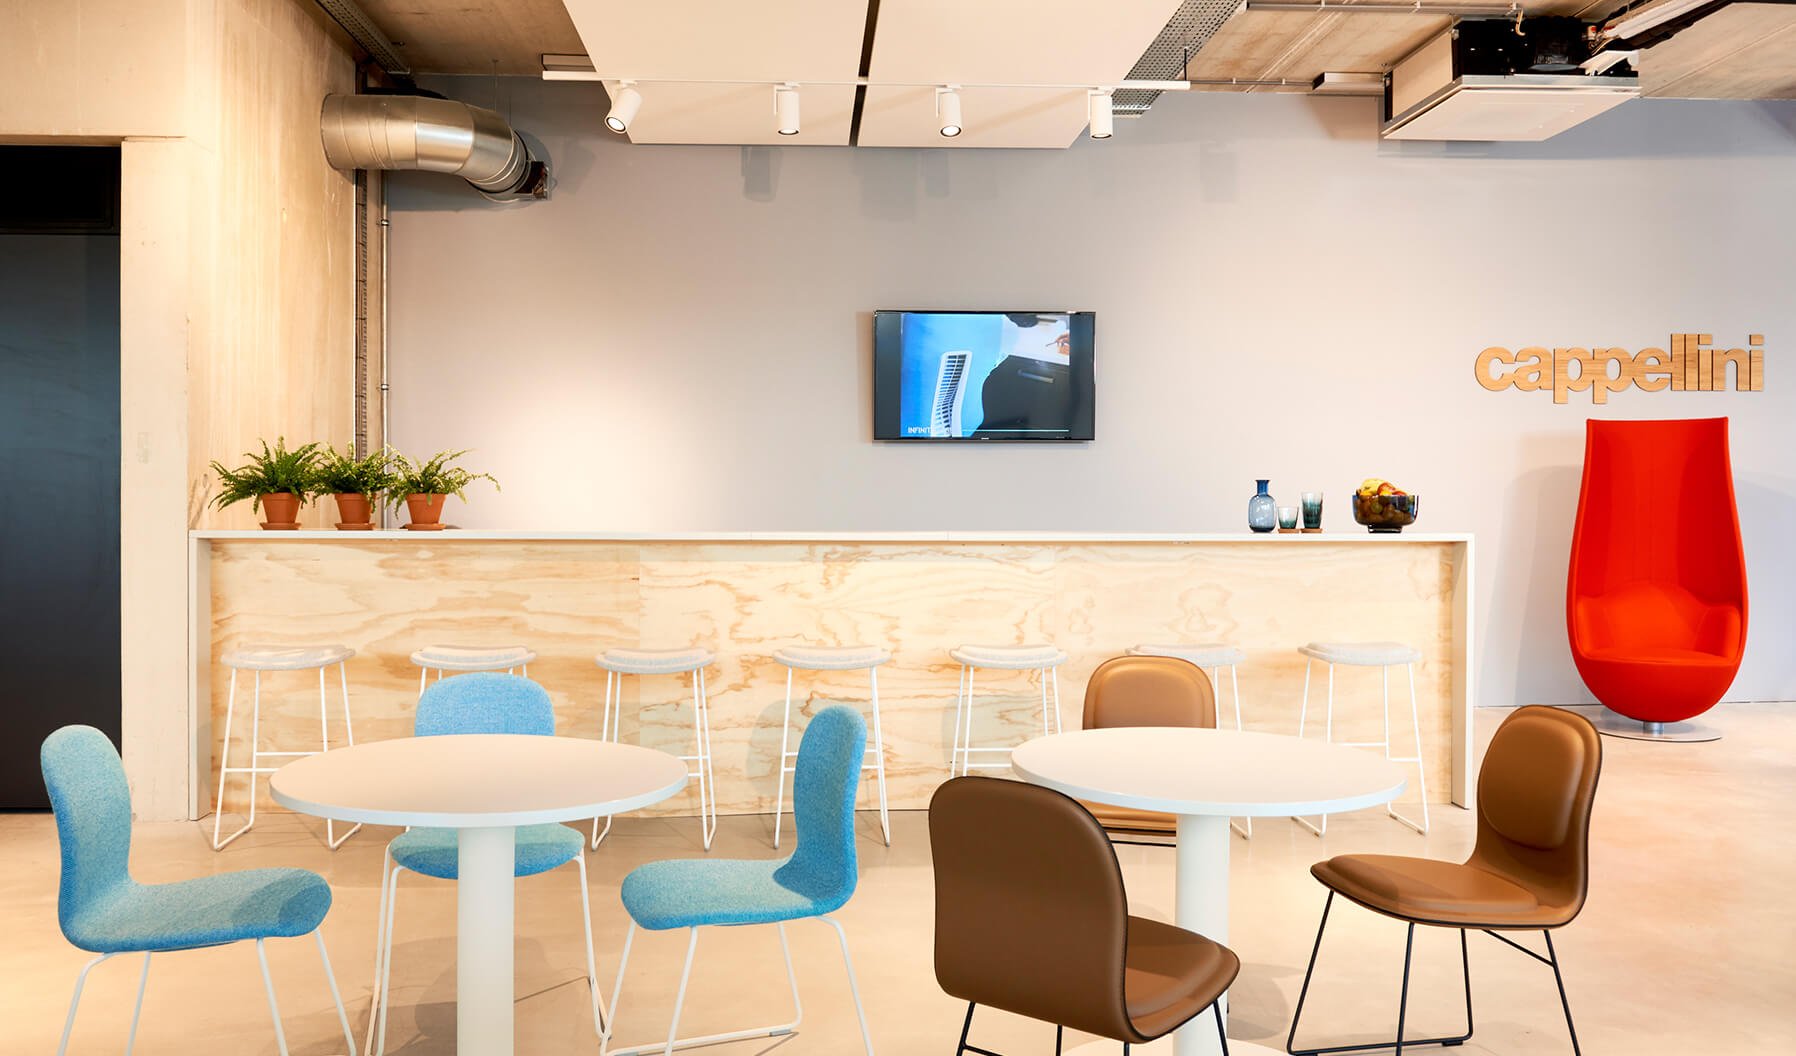 El Café Cappellini ofrece un ambiente elegante e informal para relajarse durante el almuerzo o escapar del entorno laboral para charlar. Framery proporciona un refugio para mantener una conversación privada o realizar tareas que requieren concentración.